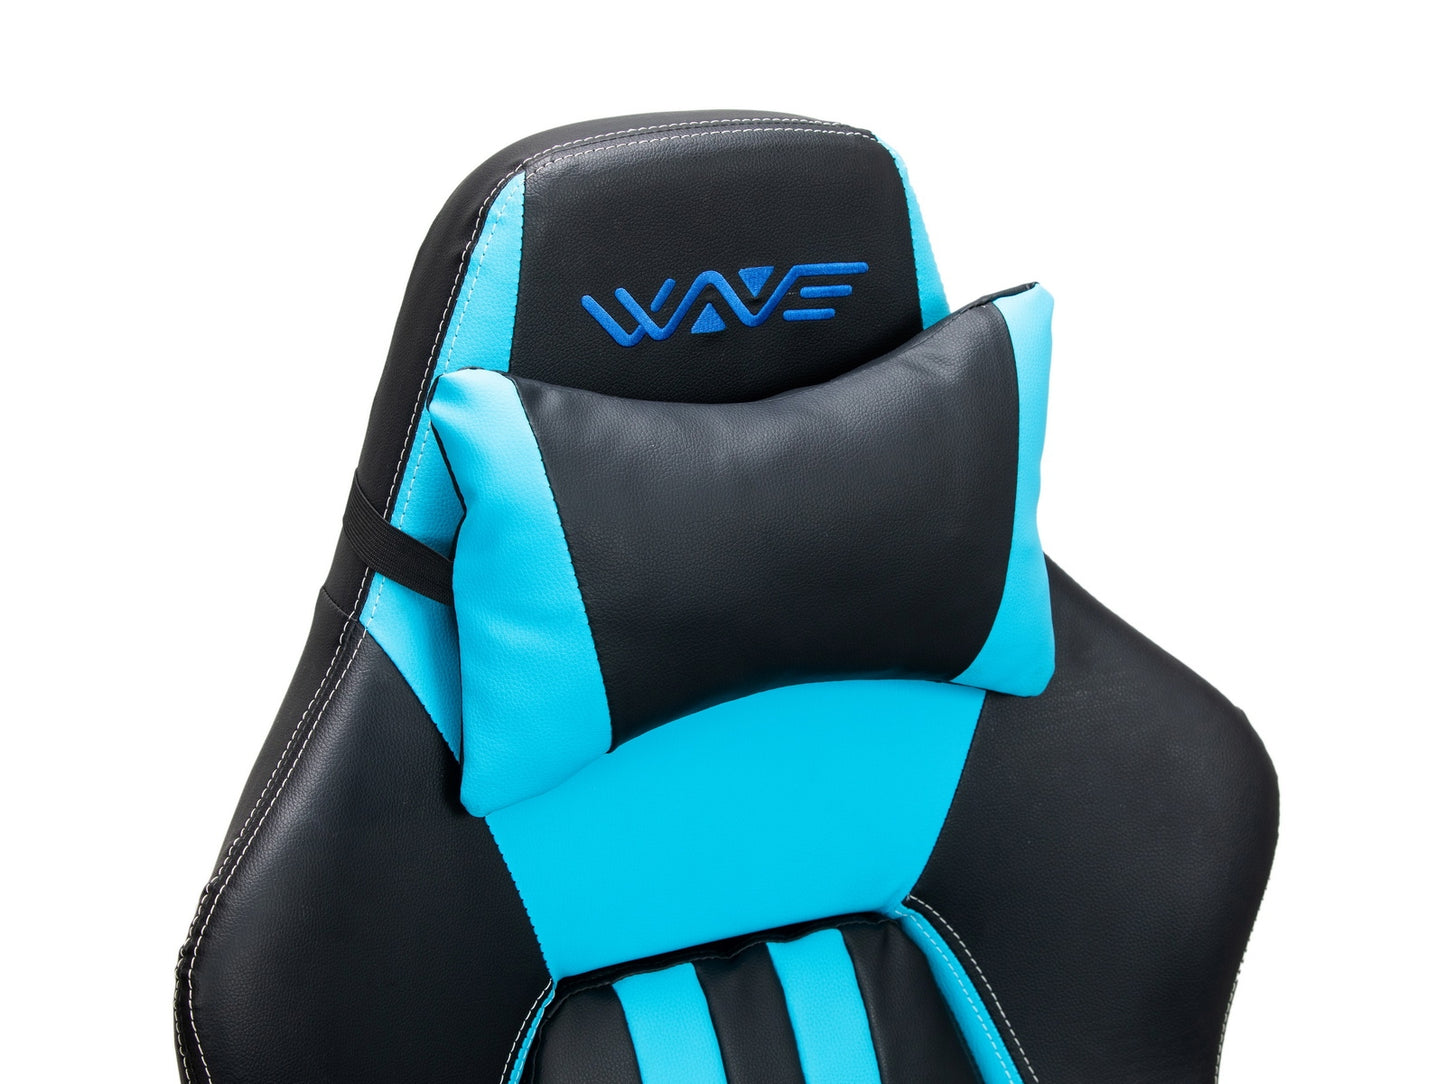 Chaise de jeu rembourrée en cuir écologique Wave Y-2558, Bleu / Noir, L67xW66xH131-141 cm